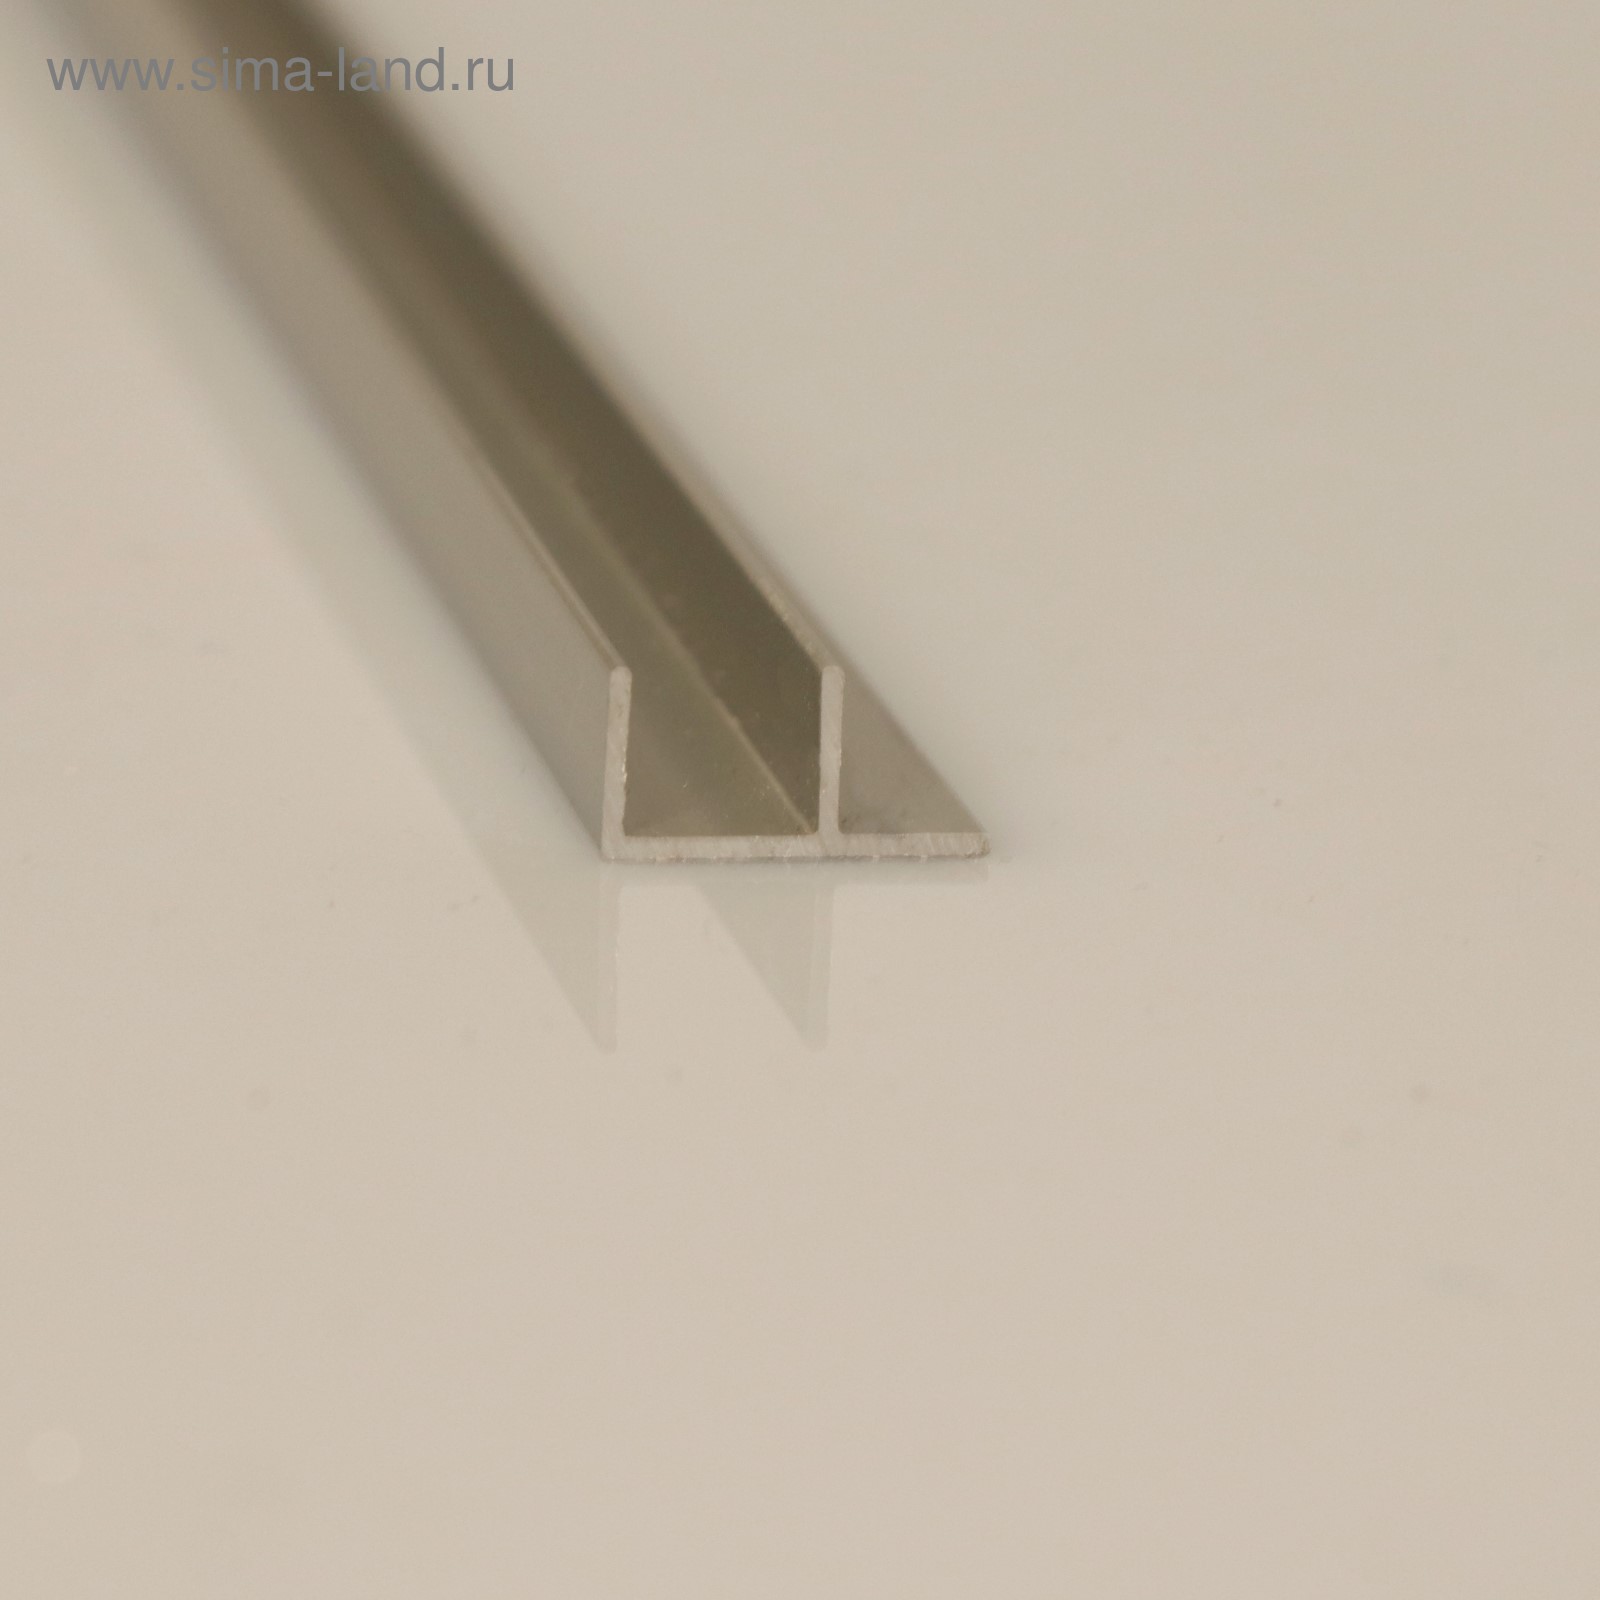 Планка для стеновой панели п-образная 60х1х0.6 см алюминий